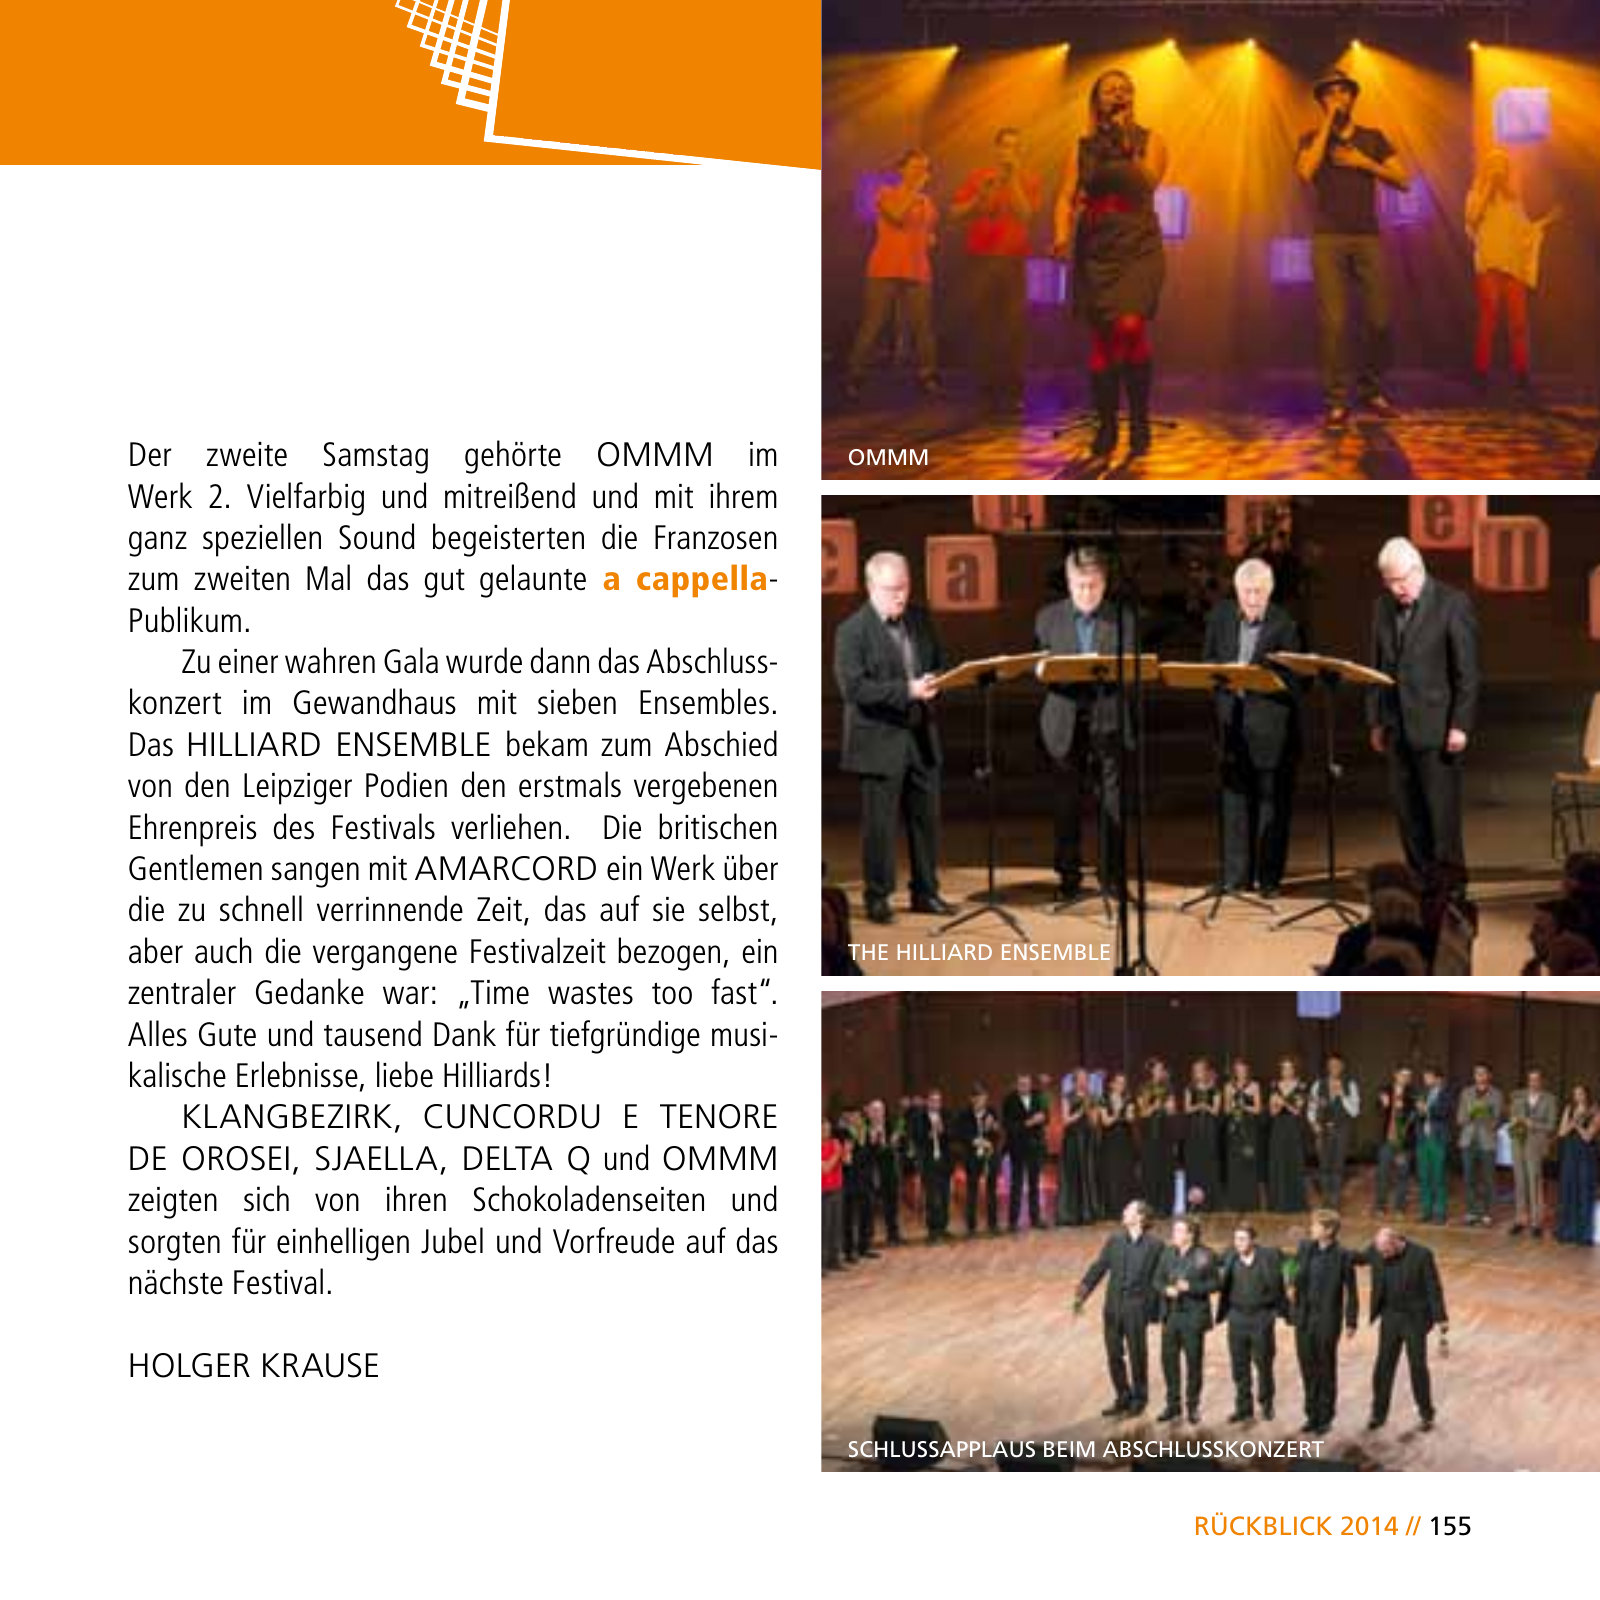 Vorschau E-Paper Festival a cappella 2015 Seite 157